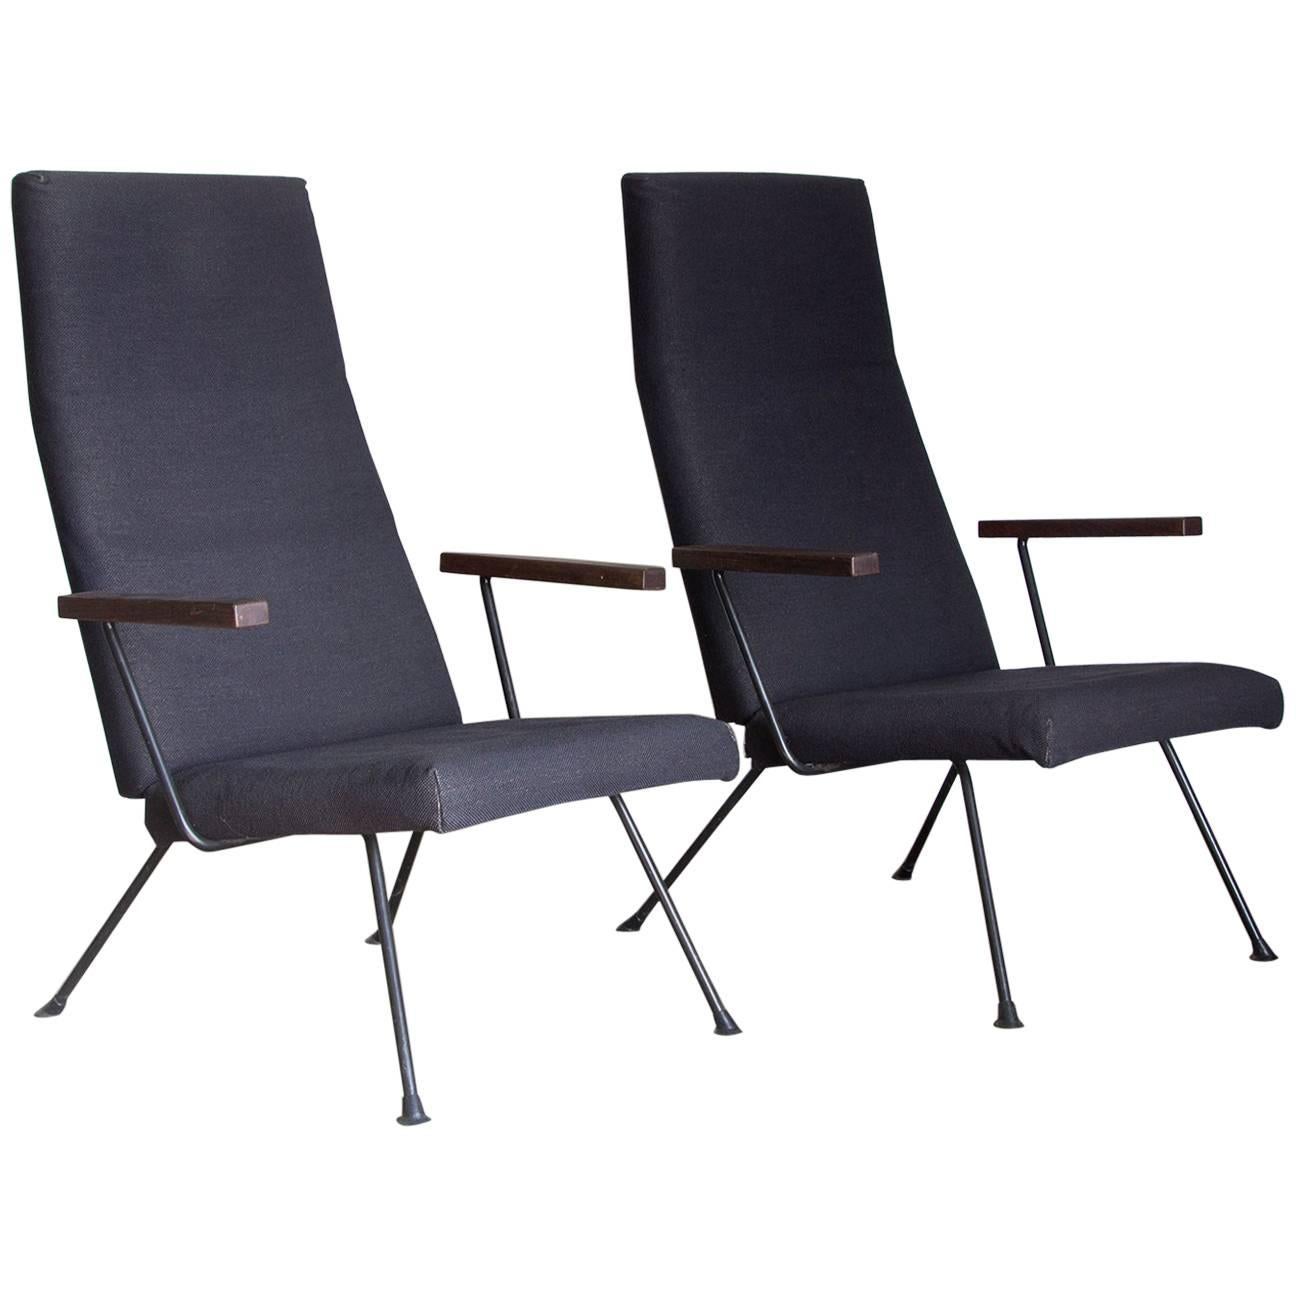 1959, Cordemeyer for Gispen, Easy Chair 1410, Original Dark Blue/Black Fabric